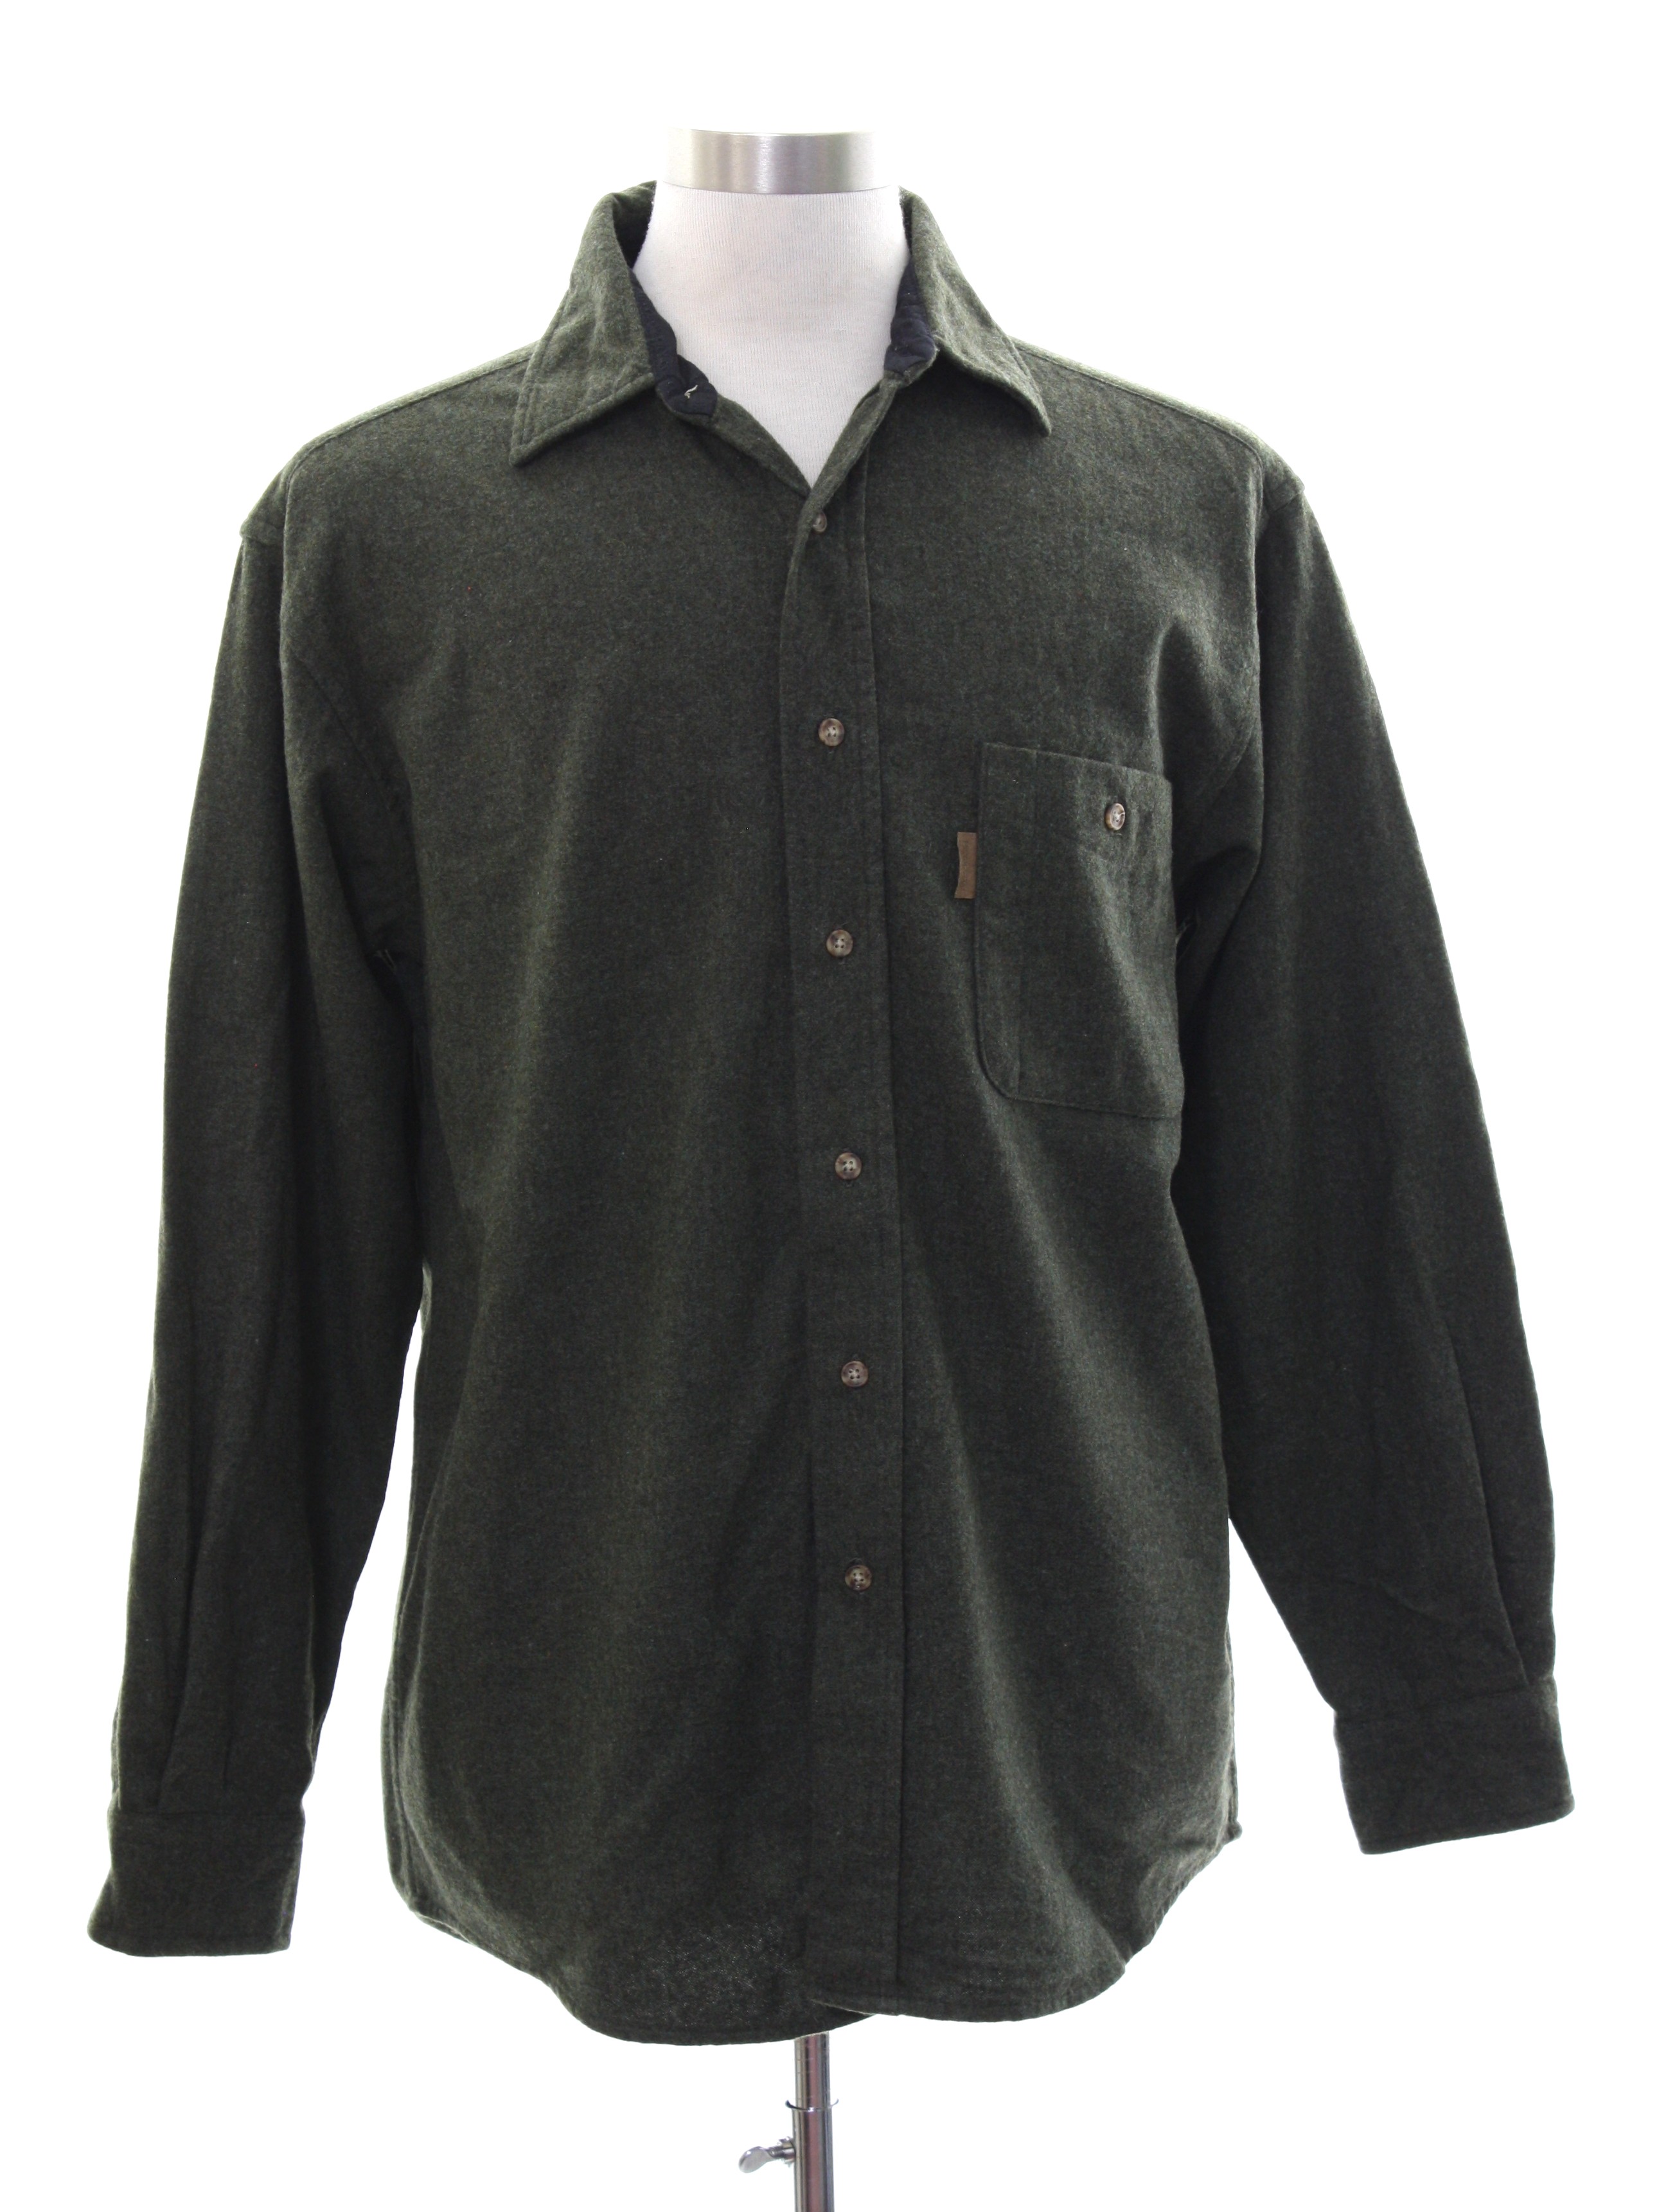 Vintage Pendleton 90's Wool Shirt: Late 90s -Pendleton- Mens dark green ...